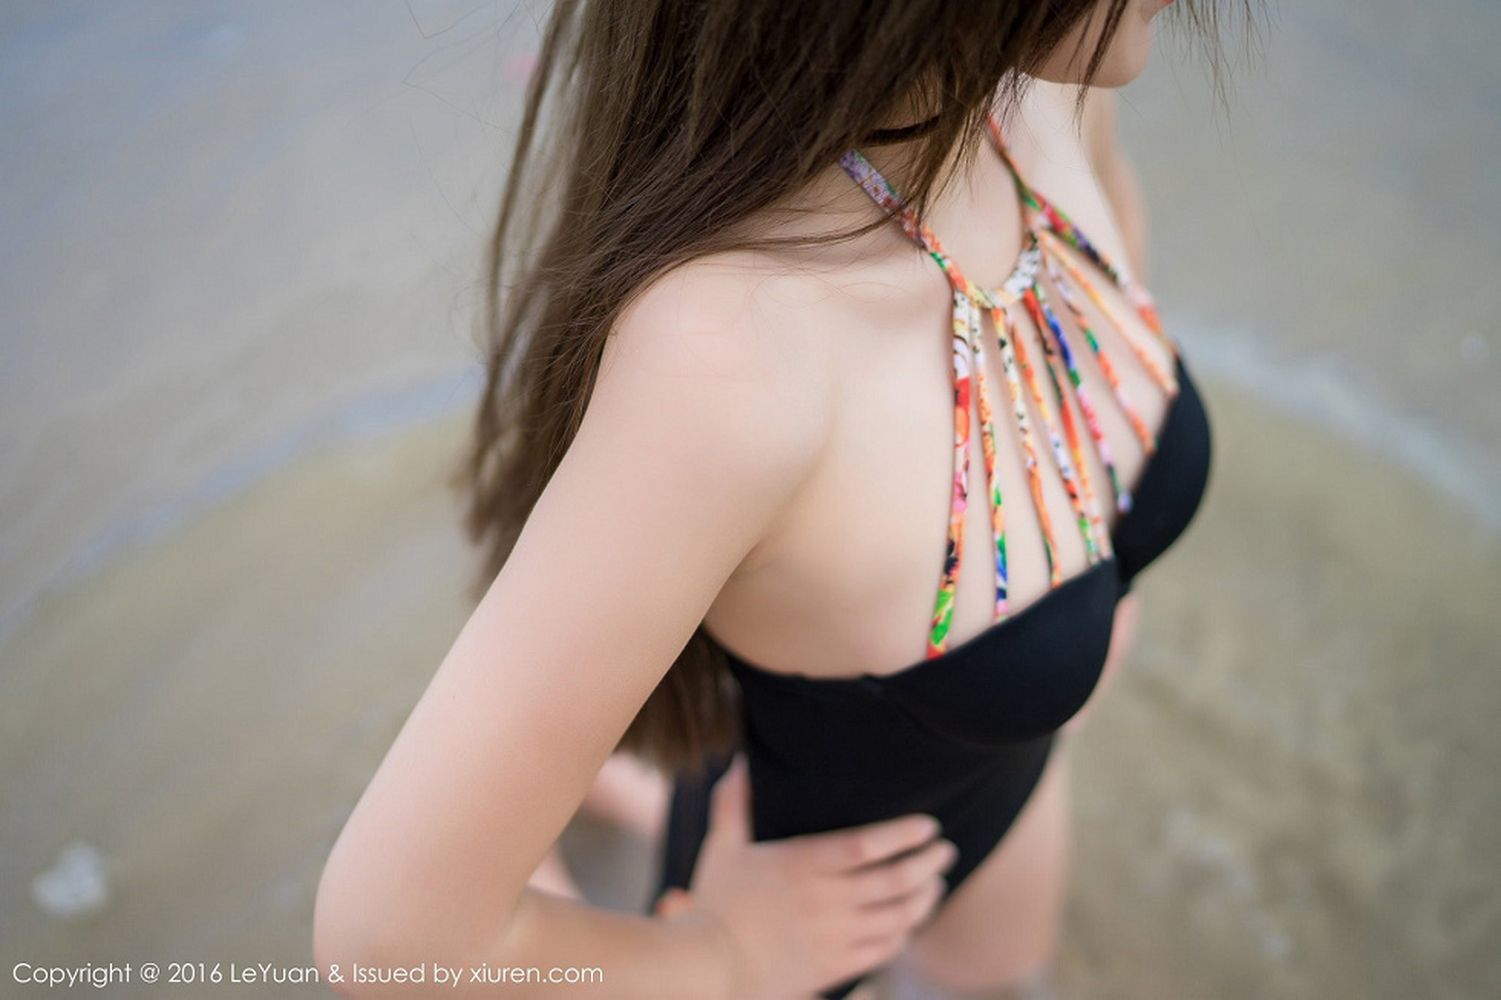 新人模特冷不丁海边沙滩黑长直泳装系列首套写真